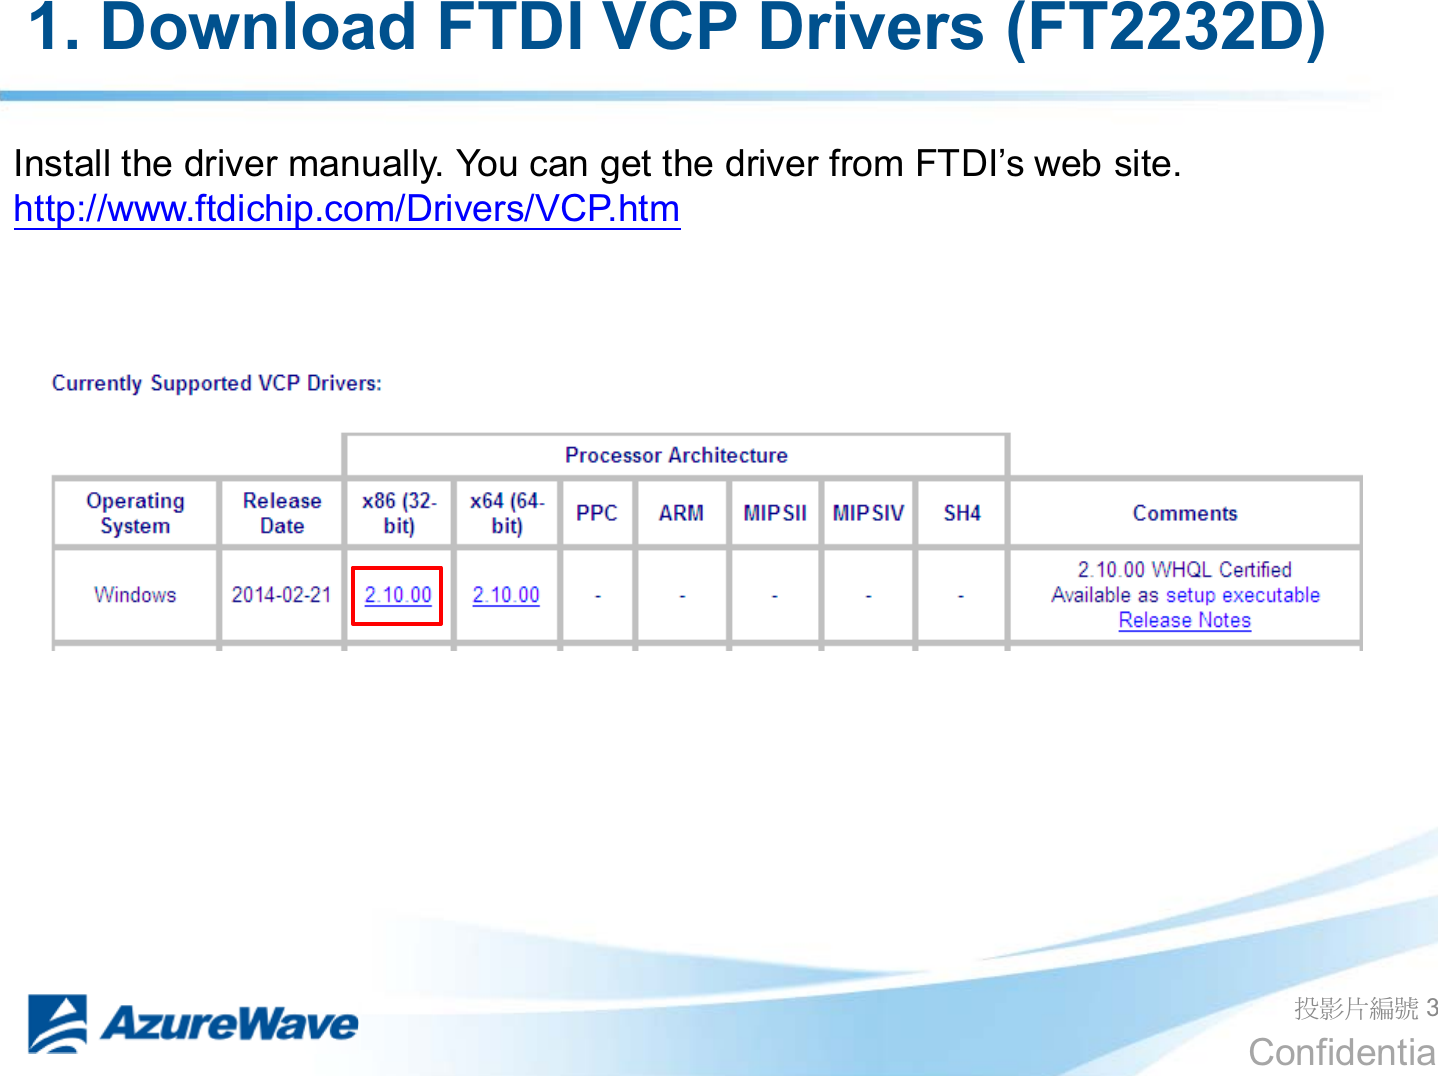 Confidential 1. Download FTDI VCP Drivers (FT2232D) ދᐙׂᒳᇆ 3 ,QVWDOOWKHGULYHUPDQXDOO\&lt;RXFDQJHWWKHGULYHUIURP)7&apos;,¶VZHEVLWH http://www.ftdichip.com/Drivers/VCP.htm 